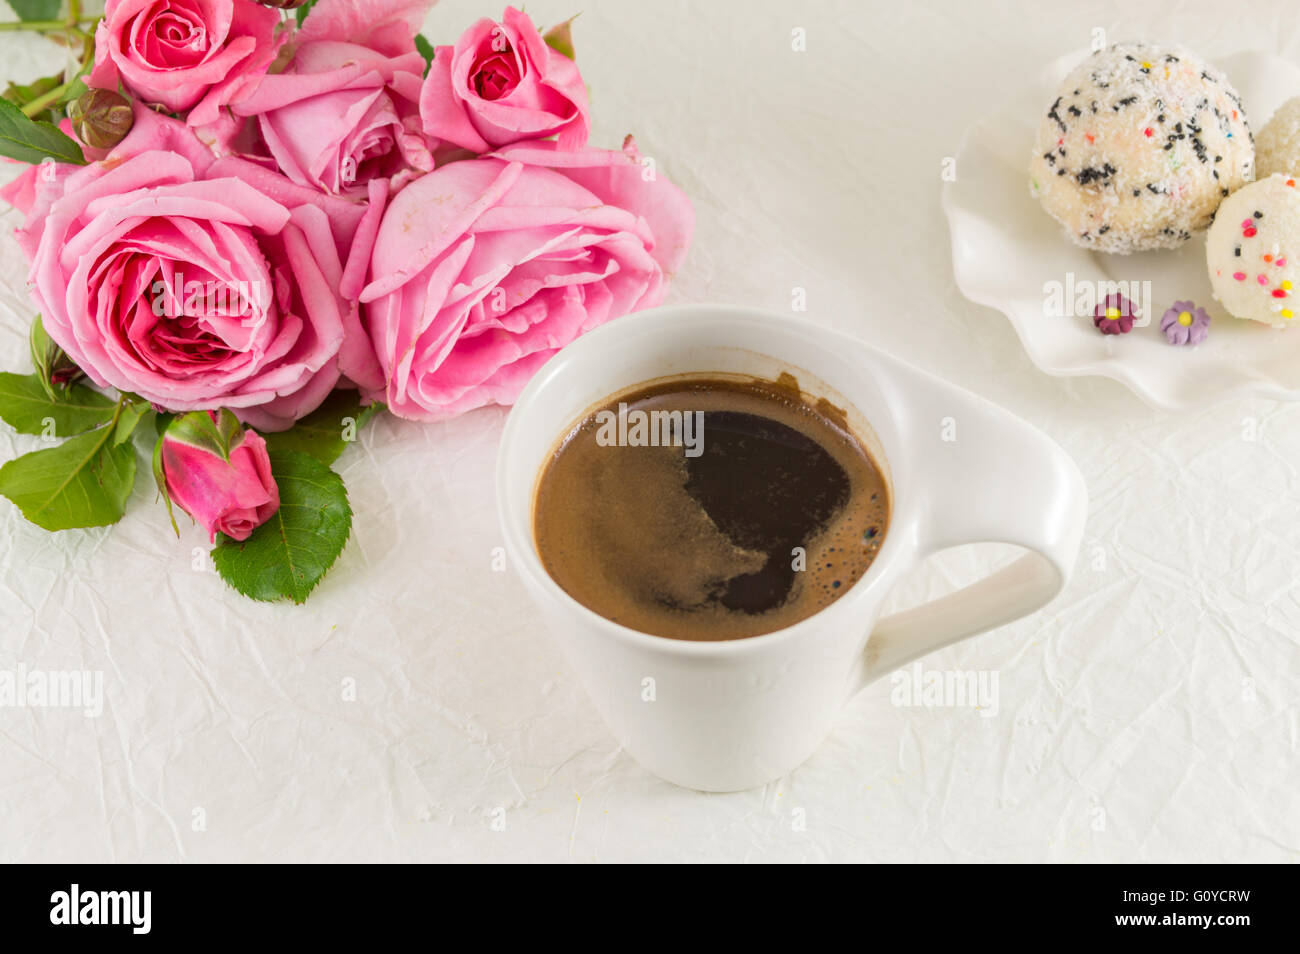 Rosa Rosen und eine Kaffeetasse auf weiße Seide Textil Stockfoto